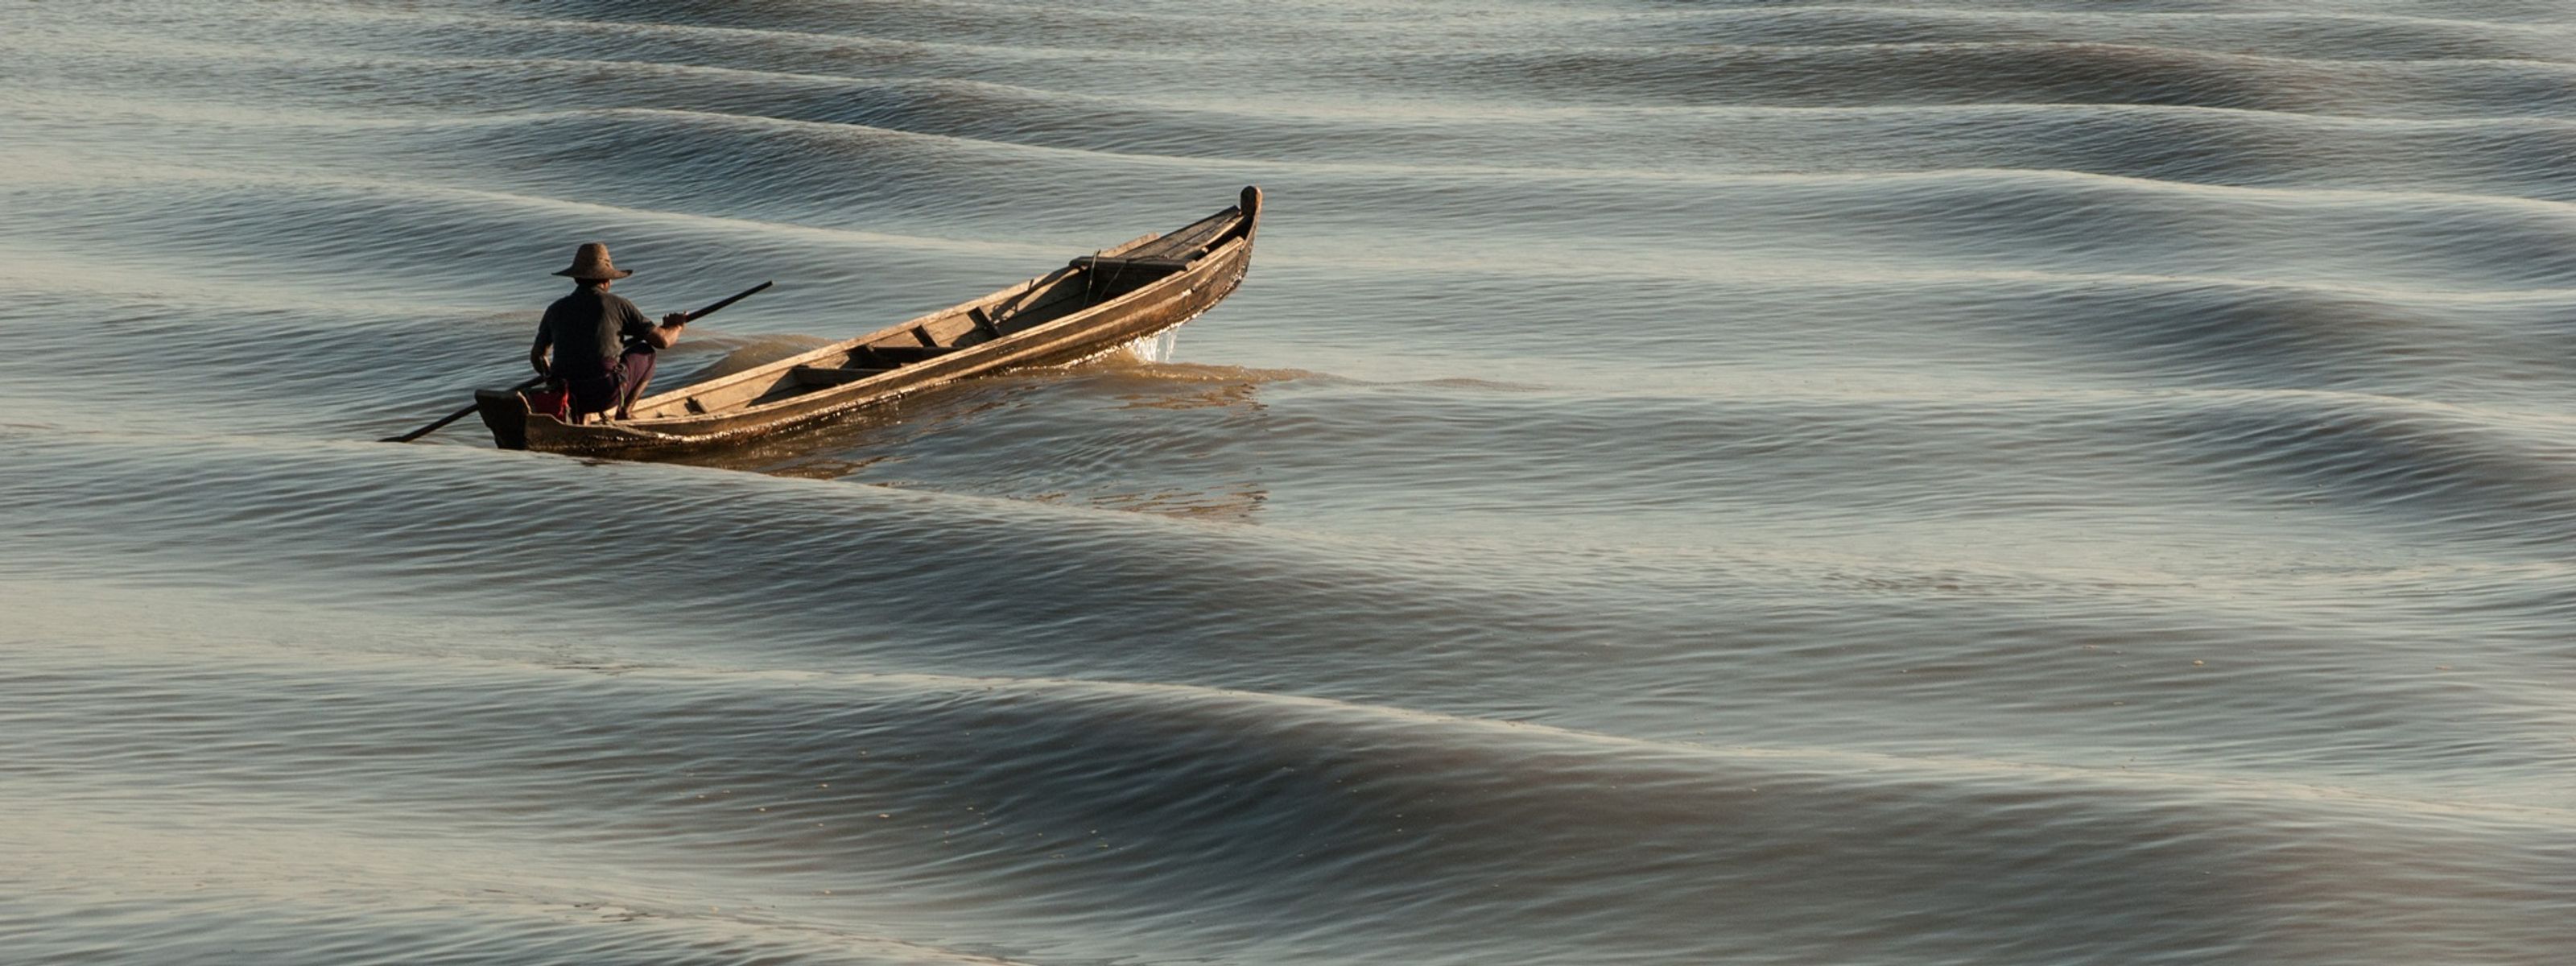 Myanmar auf dem Wasser erleben - Intensivreise mit zwei Kreuzfahrten